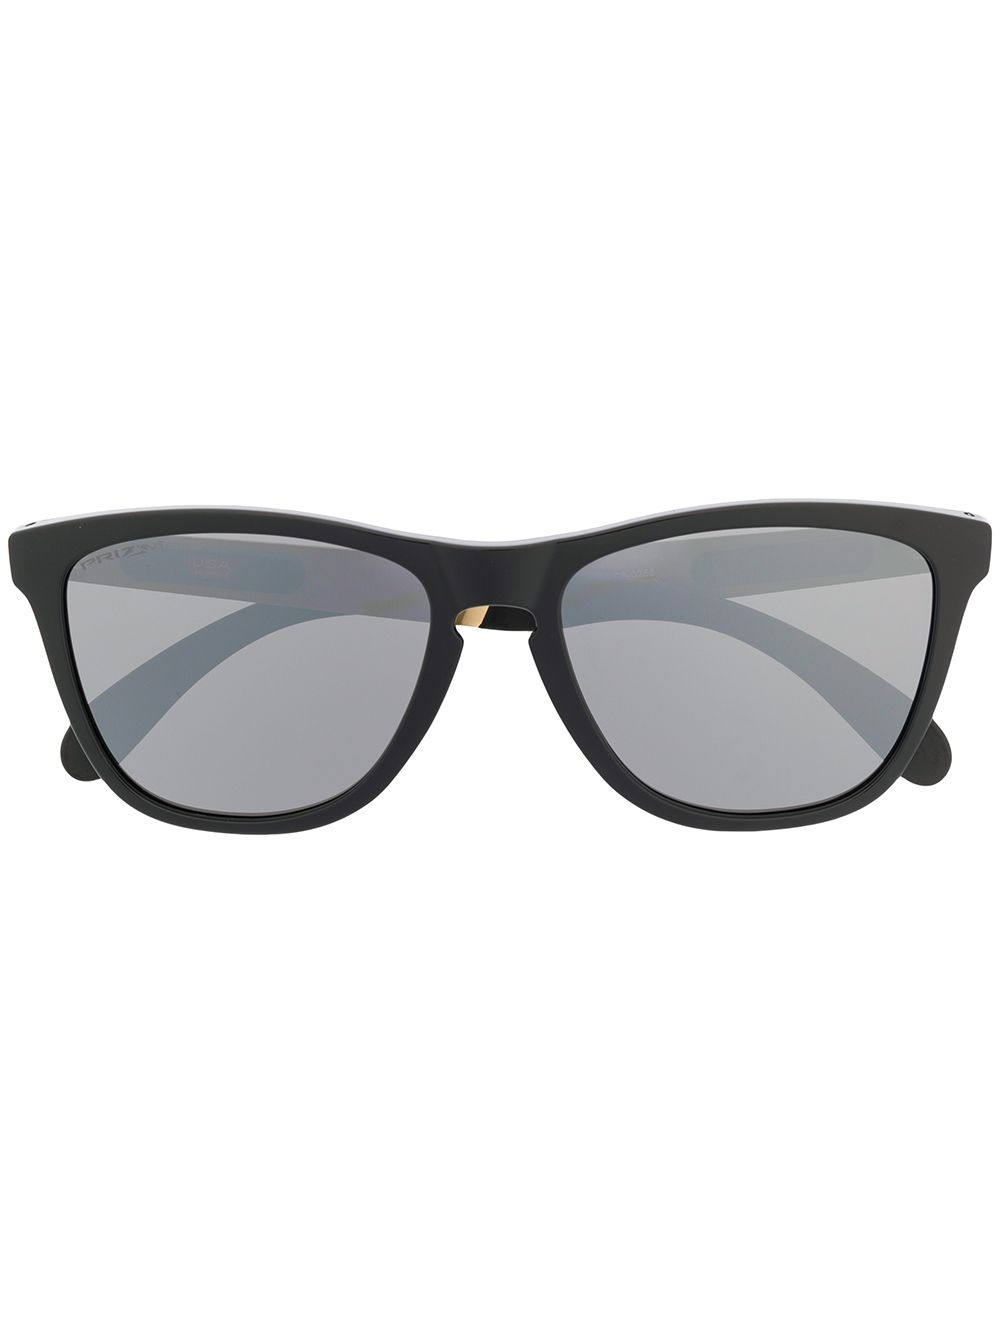 фото Oakley солнцезащитные очки с затемненными линзами